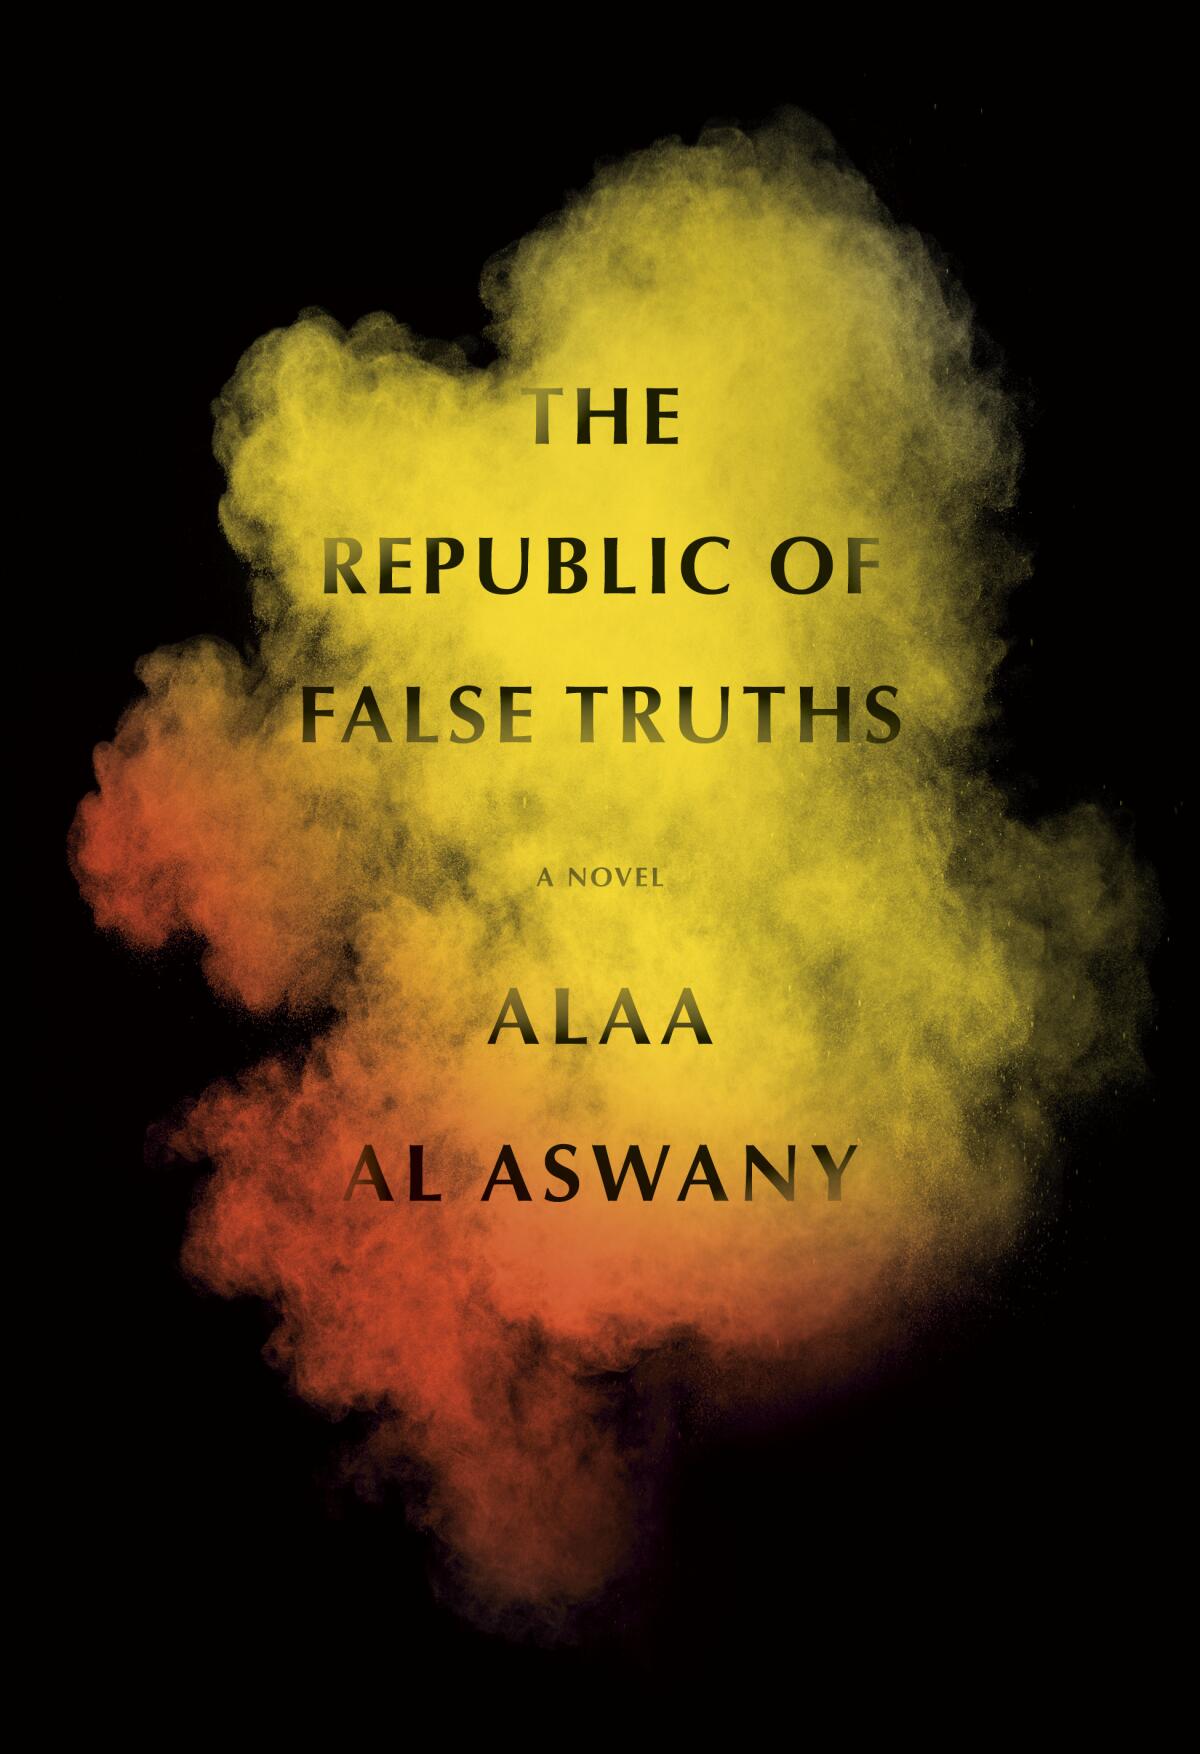 "The Republic of False Truths," by Alaa Al Aswany